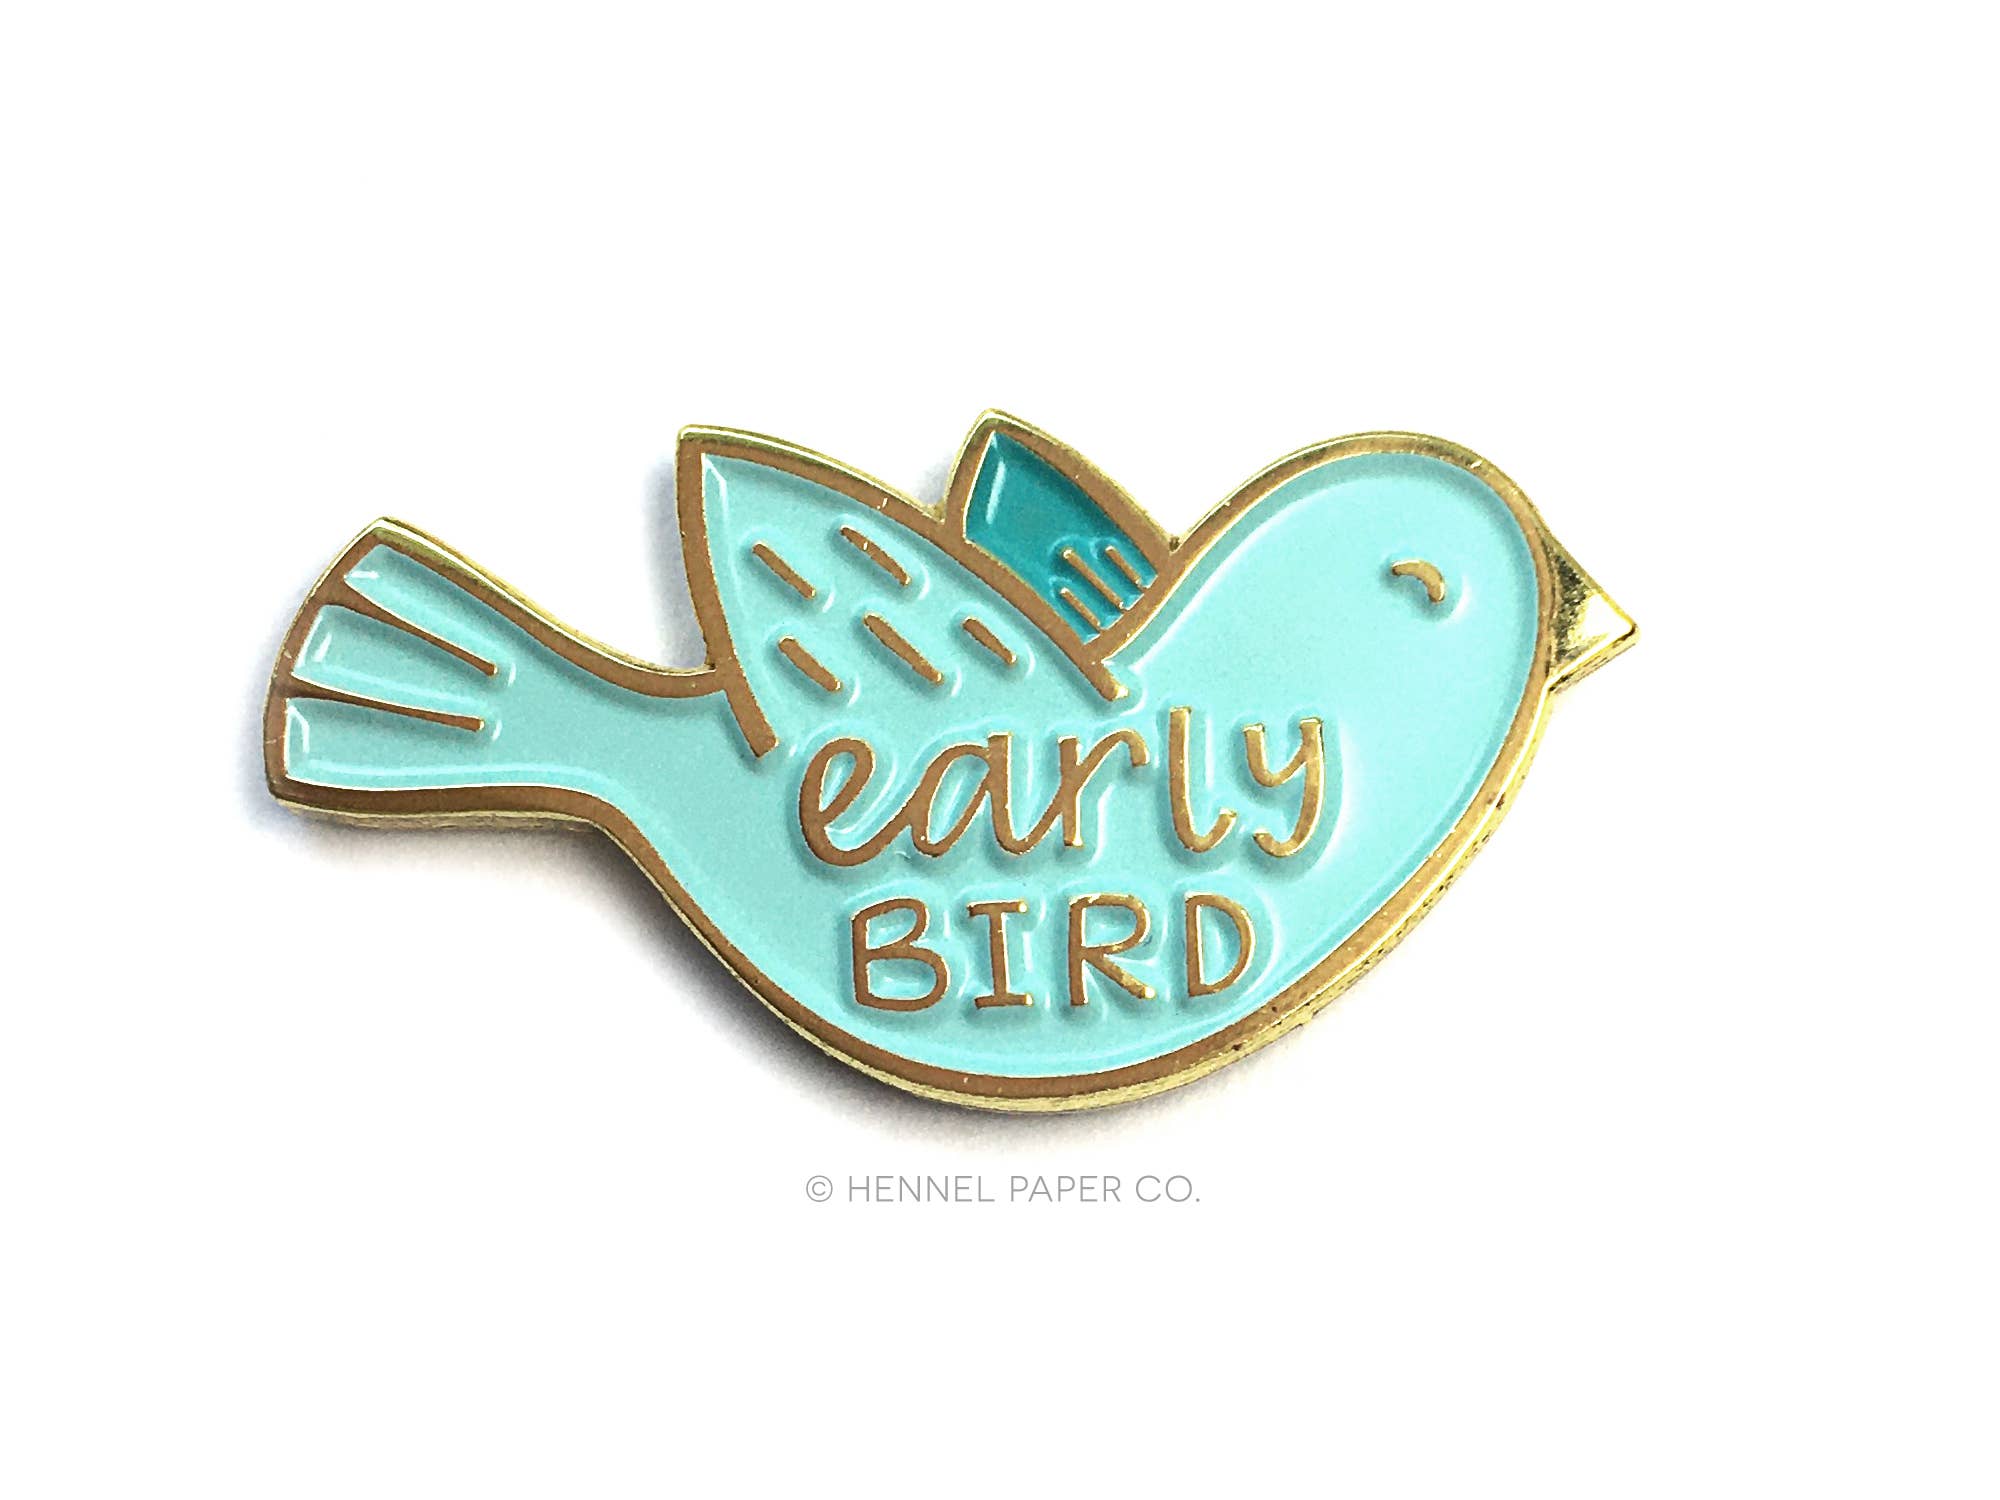 Early Bird Enamel Pin